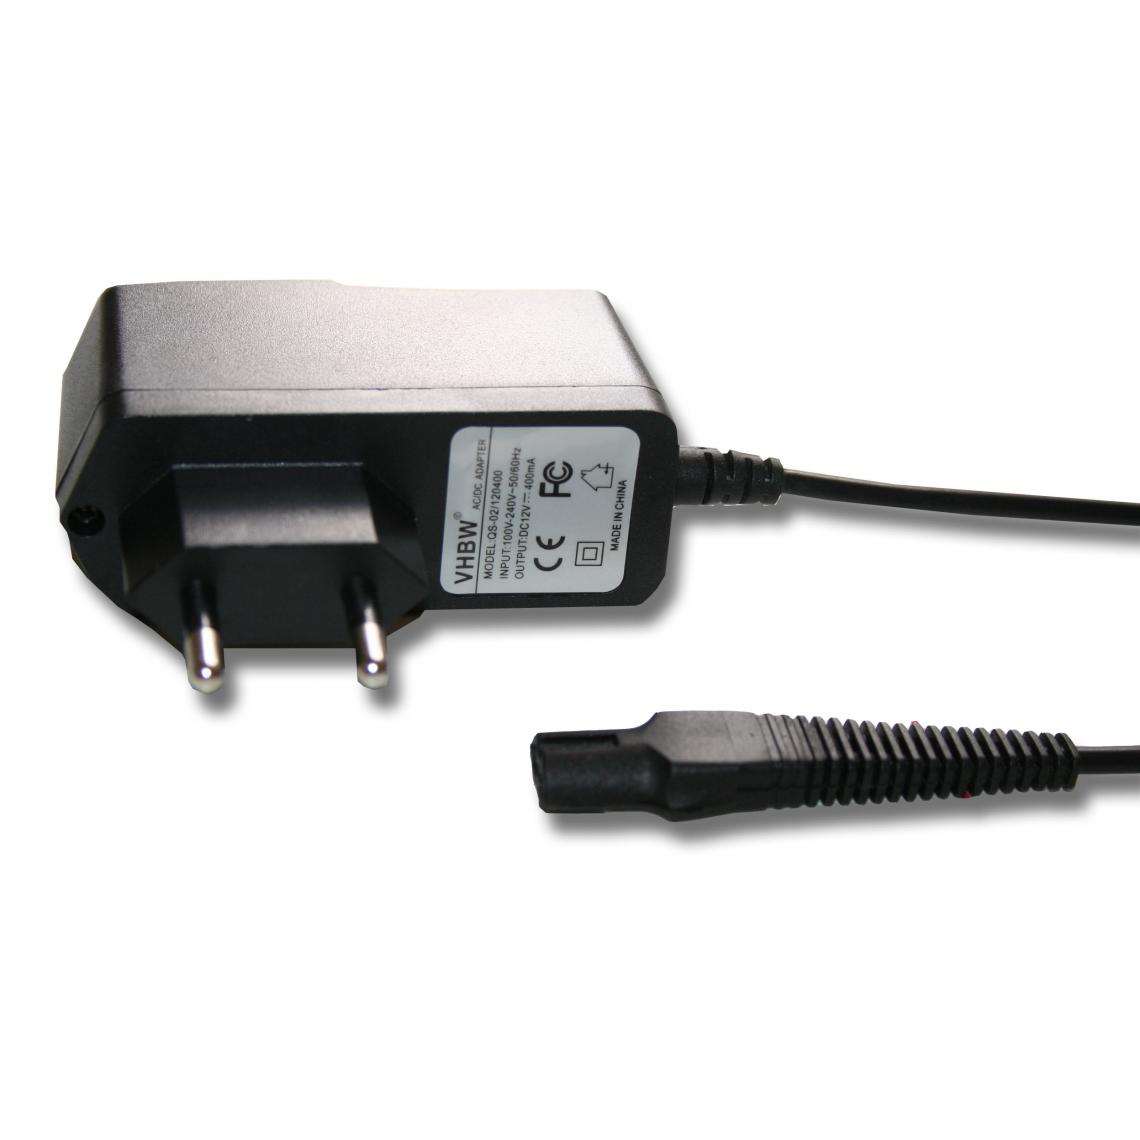 Vhbw - vhbw Chargeur compatible avec Oral-B Genius Smart 7000, Type 3765 rasoirs - Grilles, couteaux